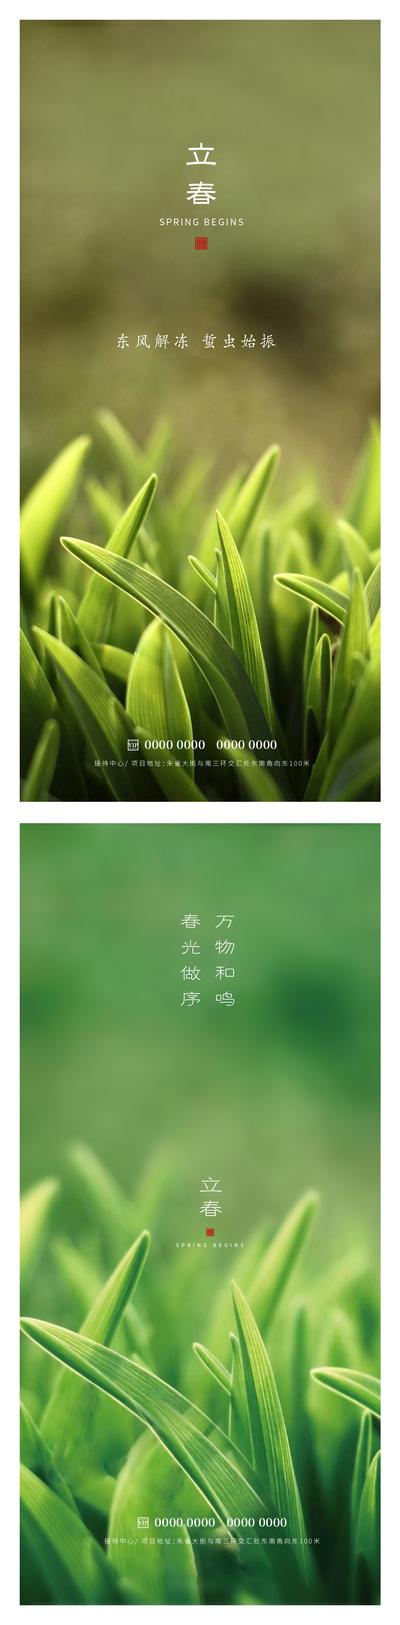 南门网 广告 海报 节日 立春 春天 绿叶 草 叶子 清新